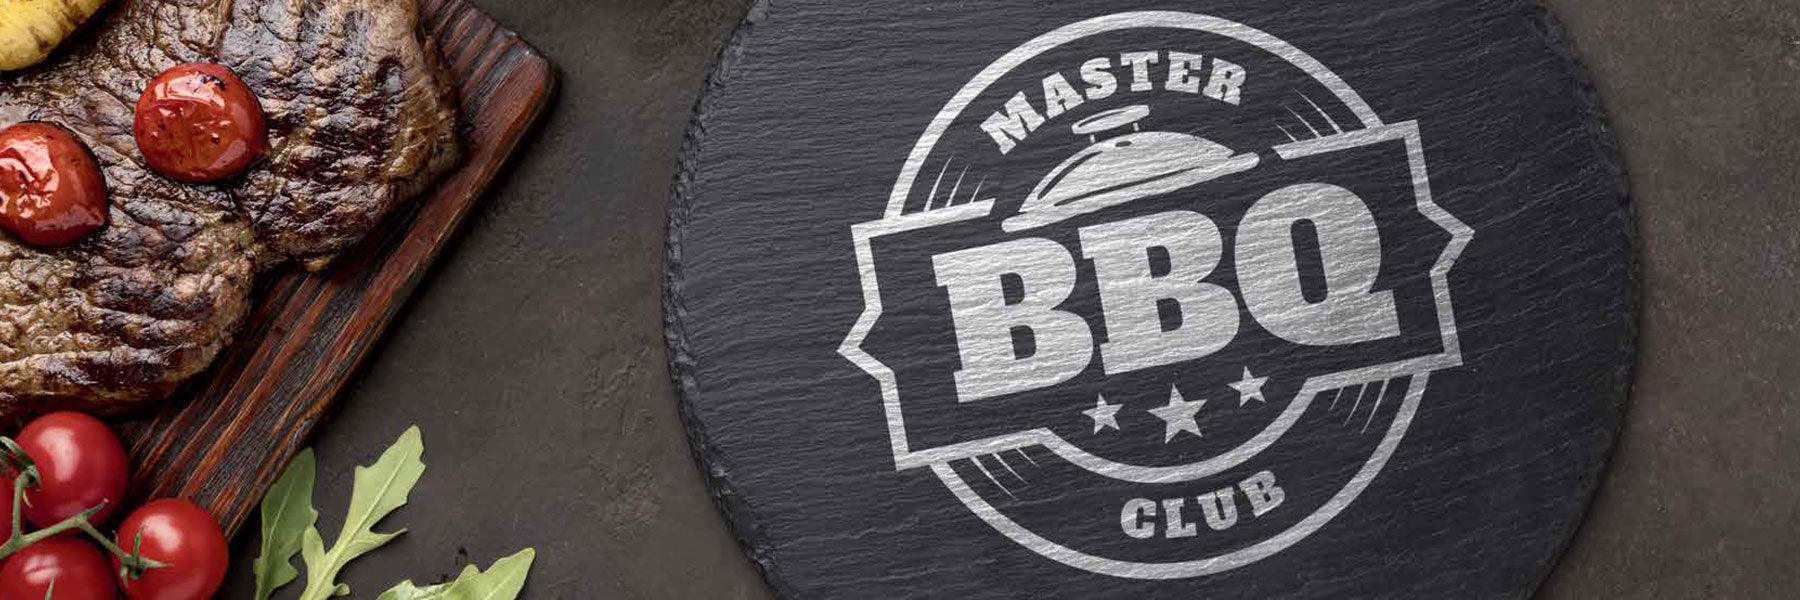 BBQ Master Club - Holy Grail Steak Co.